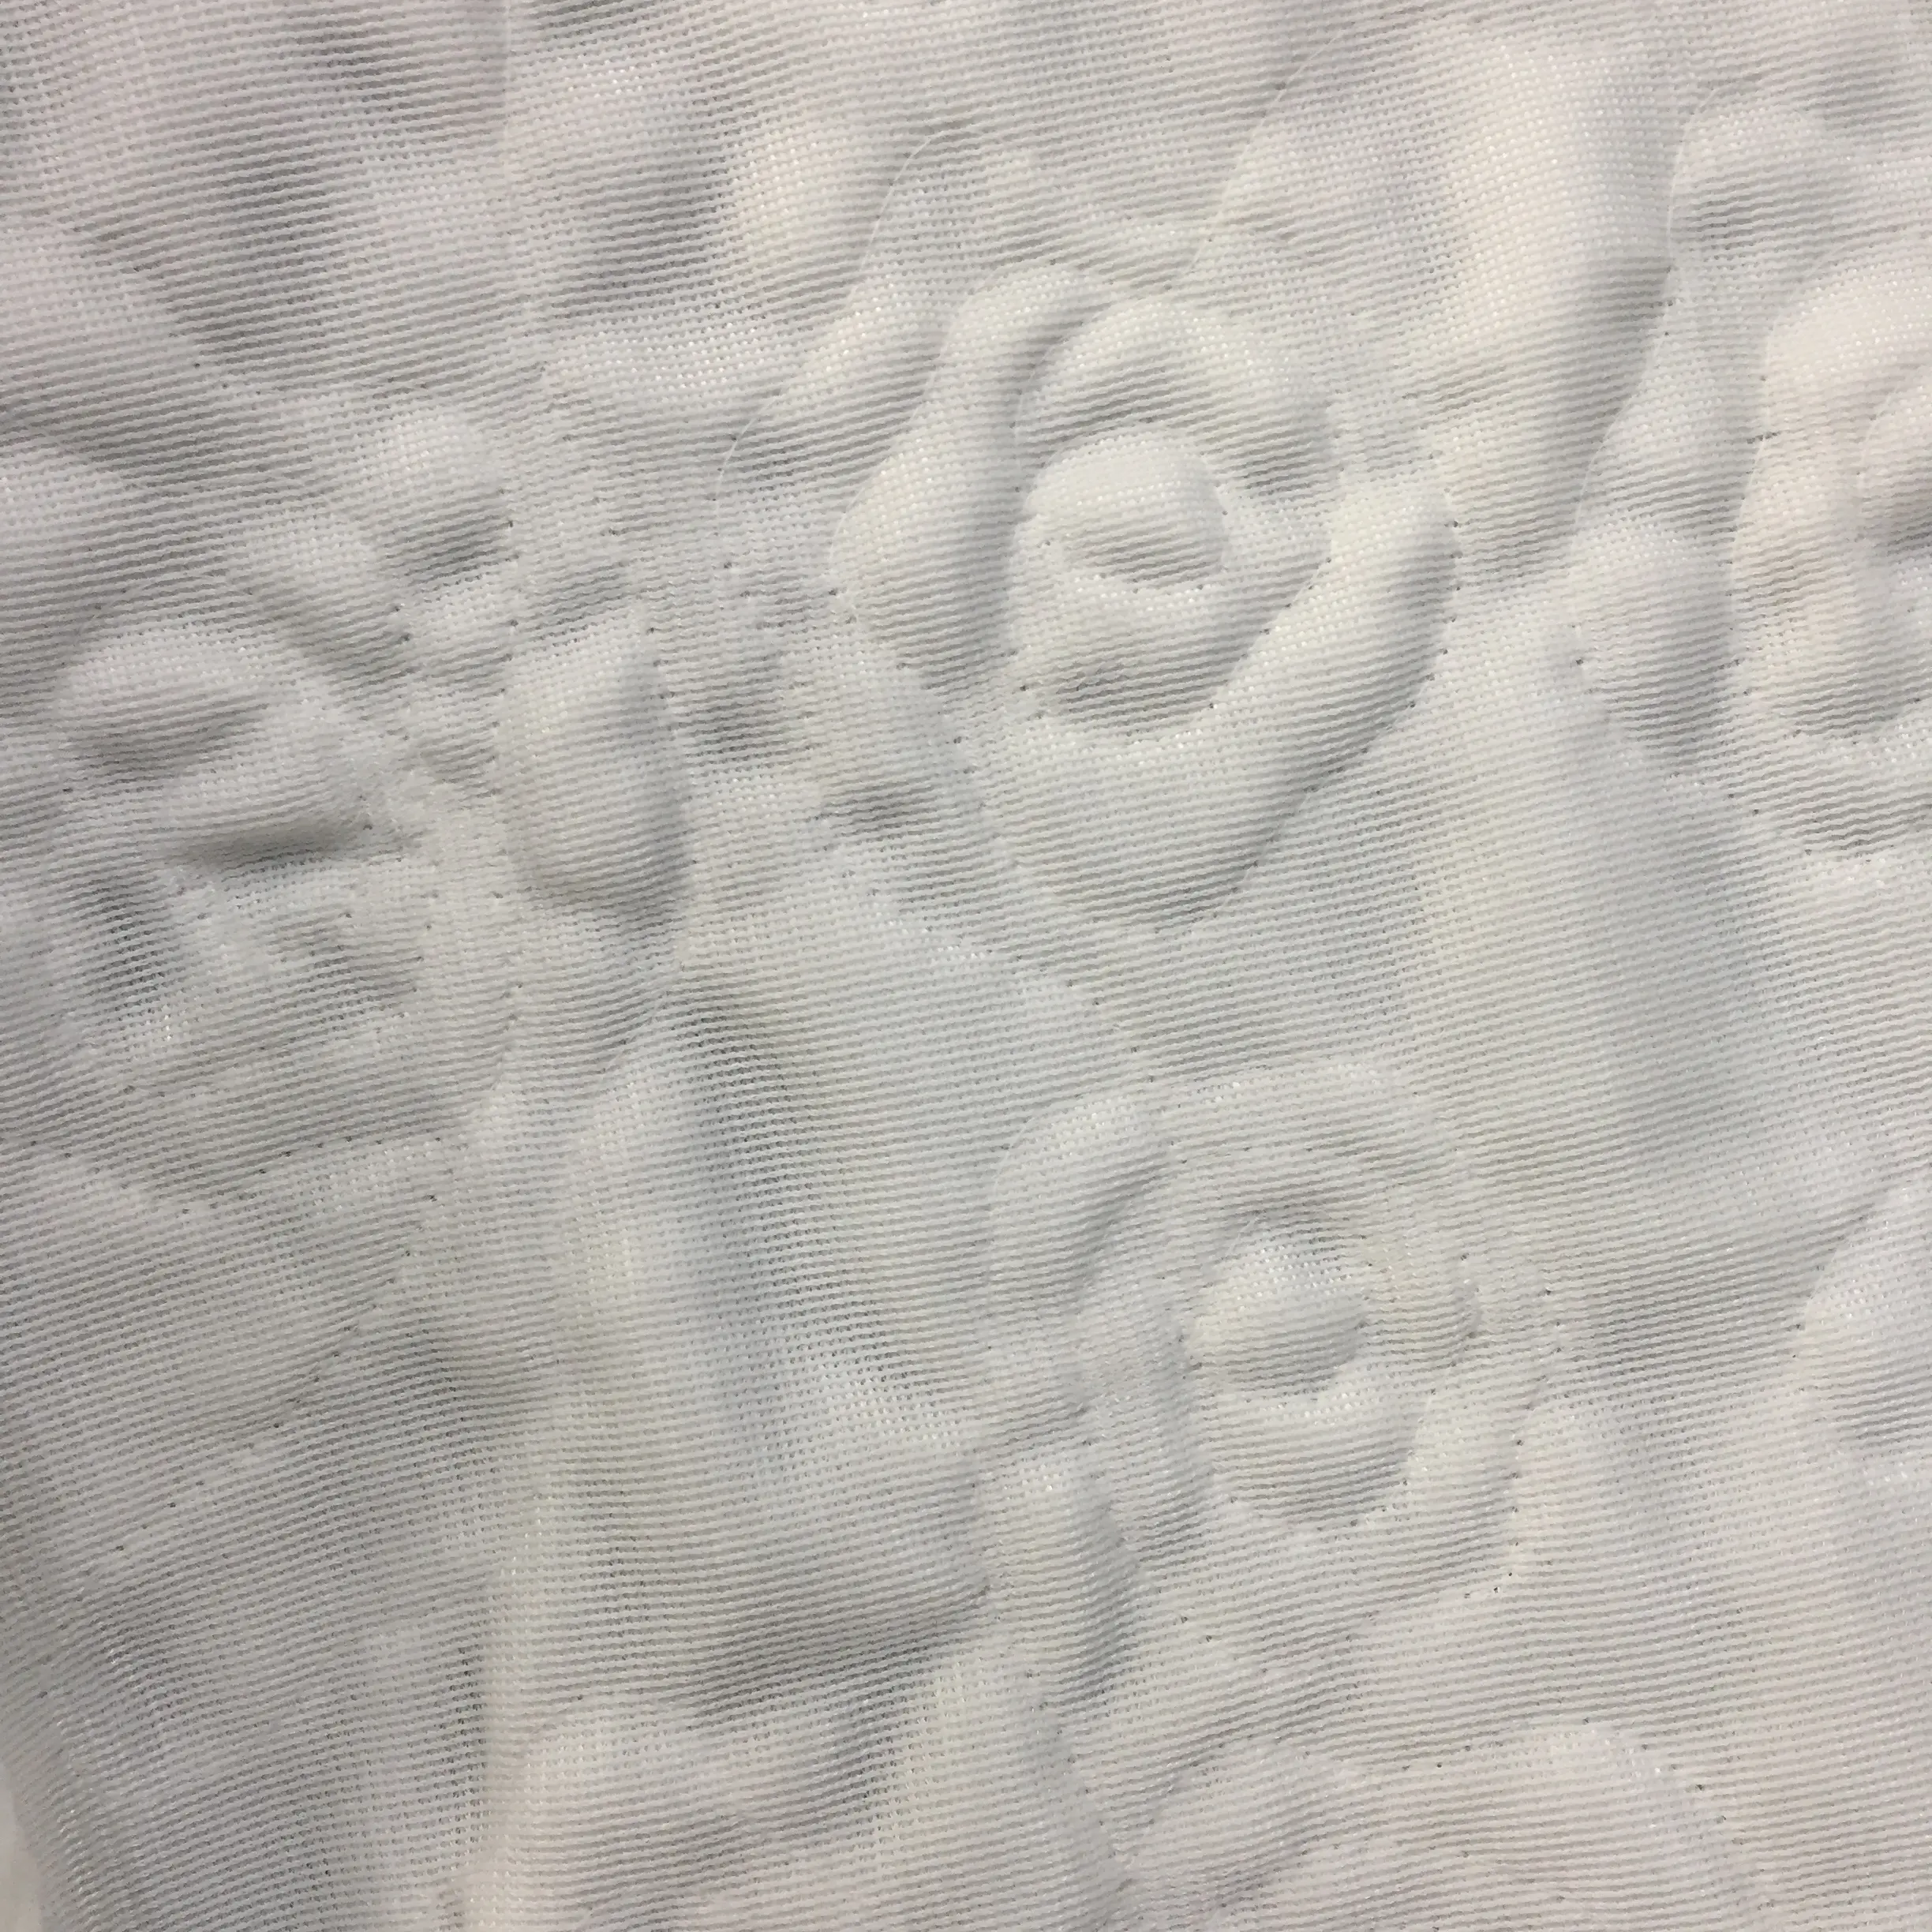 Мягкий искусственный мех вышивка ткань образец кружева для одеяло